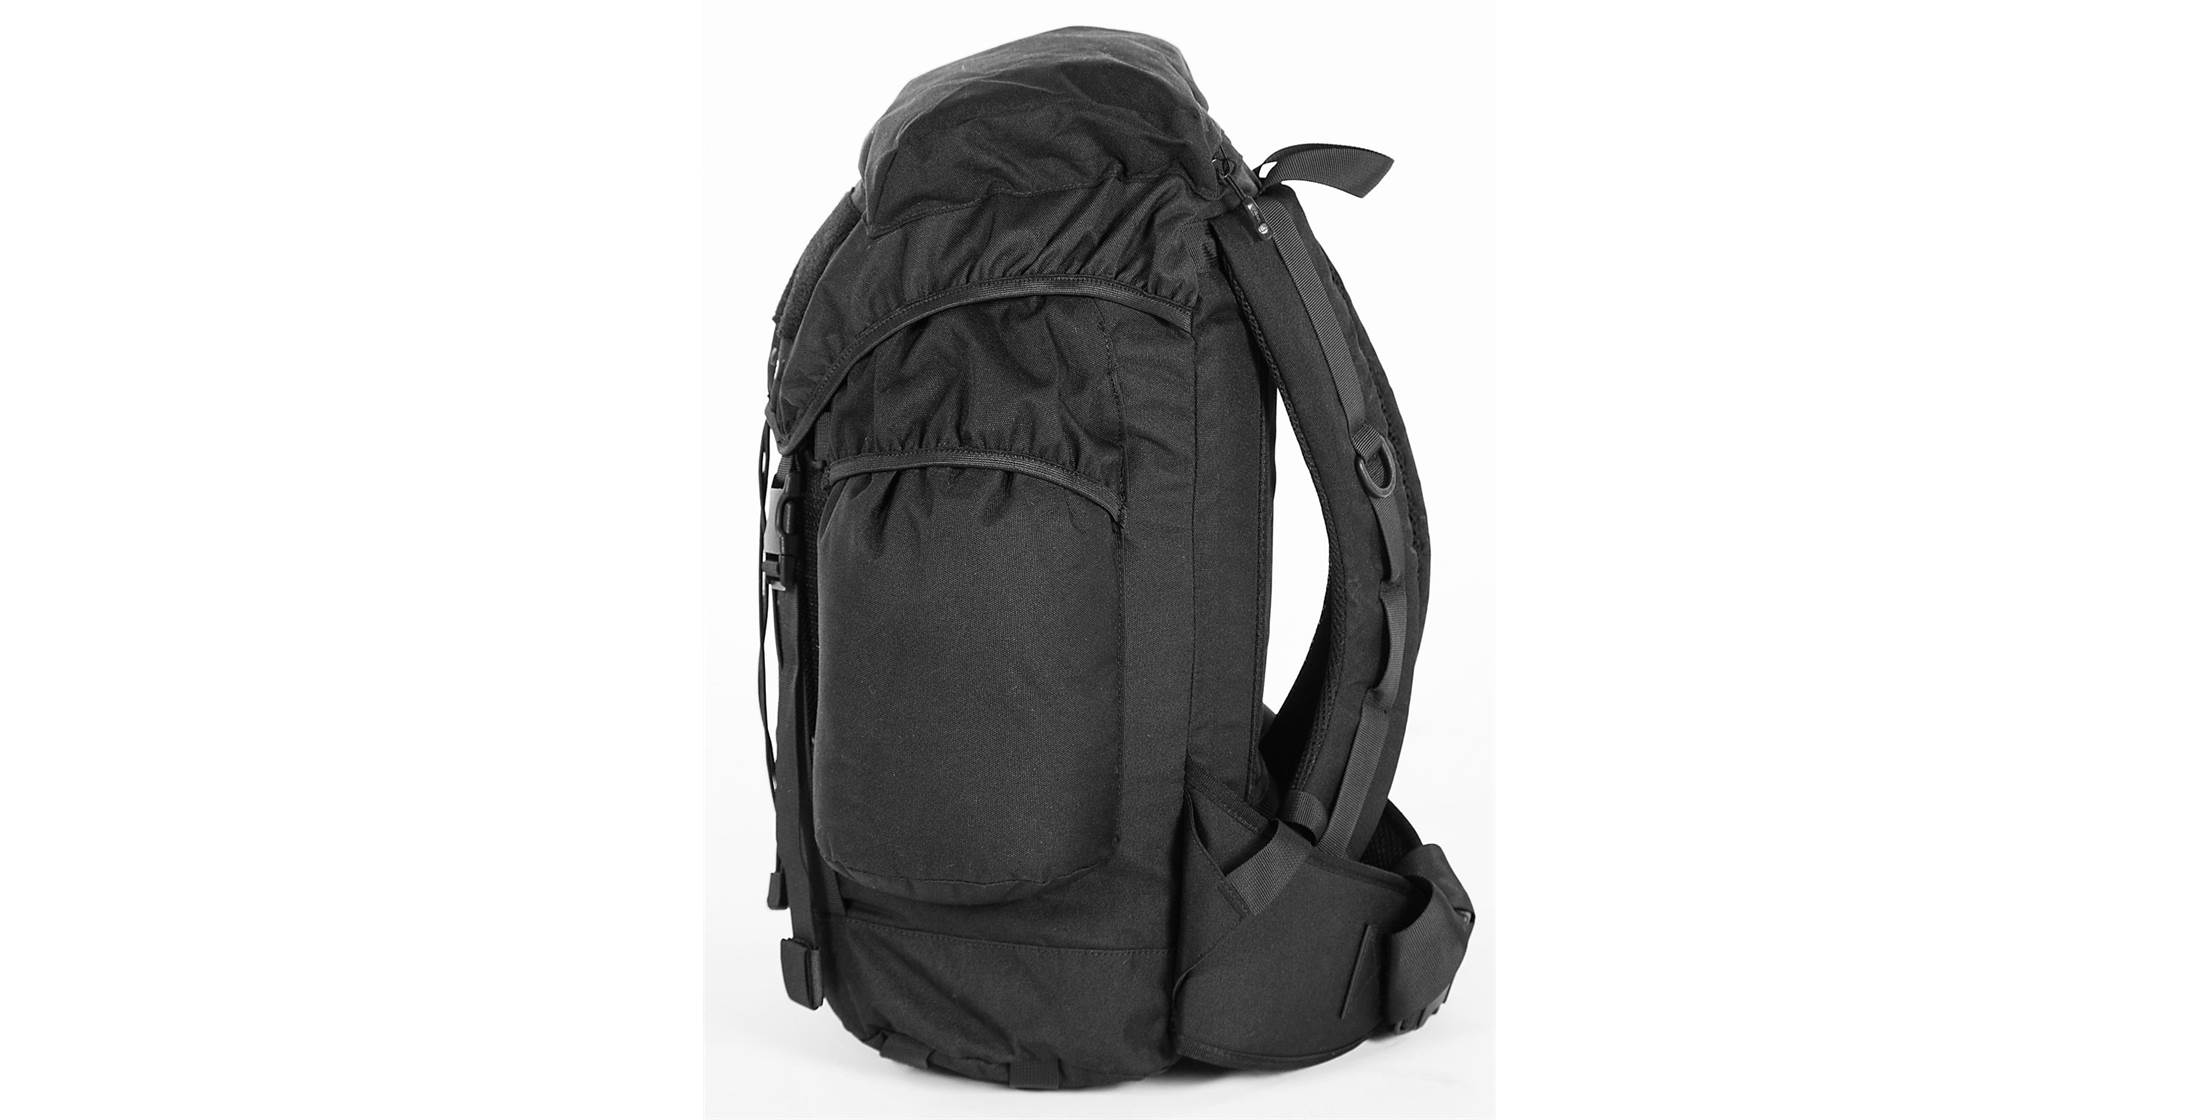 Snugpak Sleeka Force 35L Backpack OutdoorGB